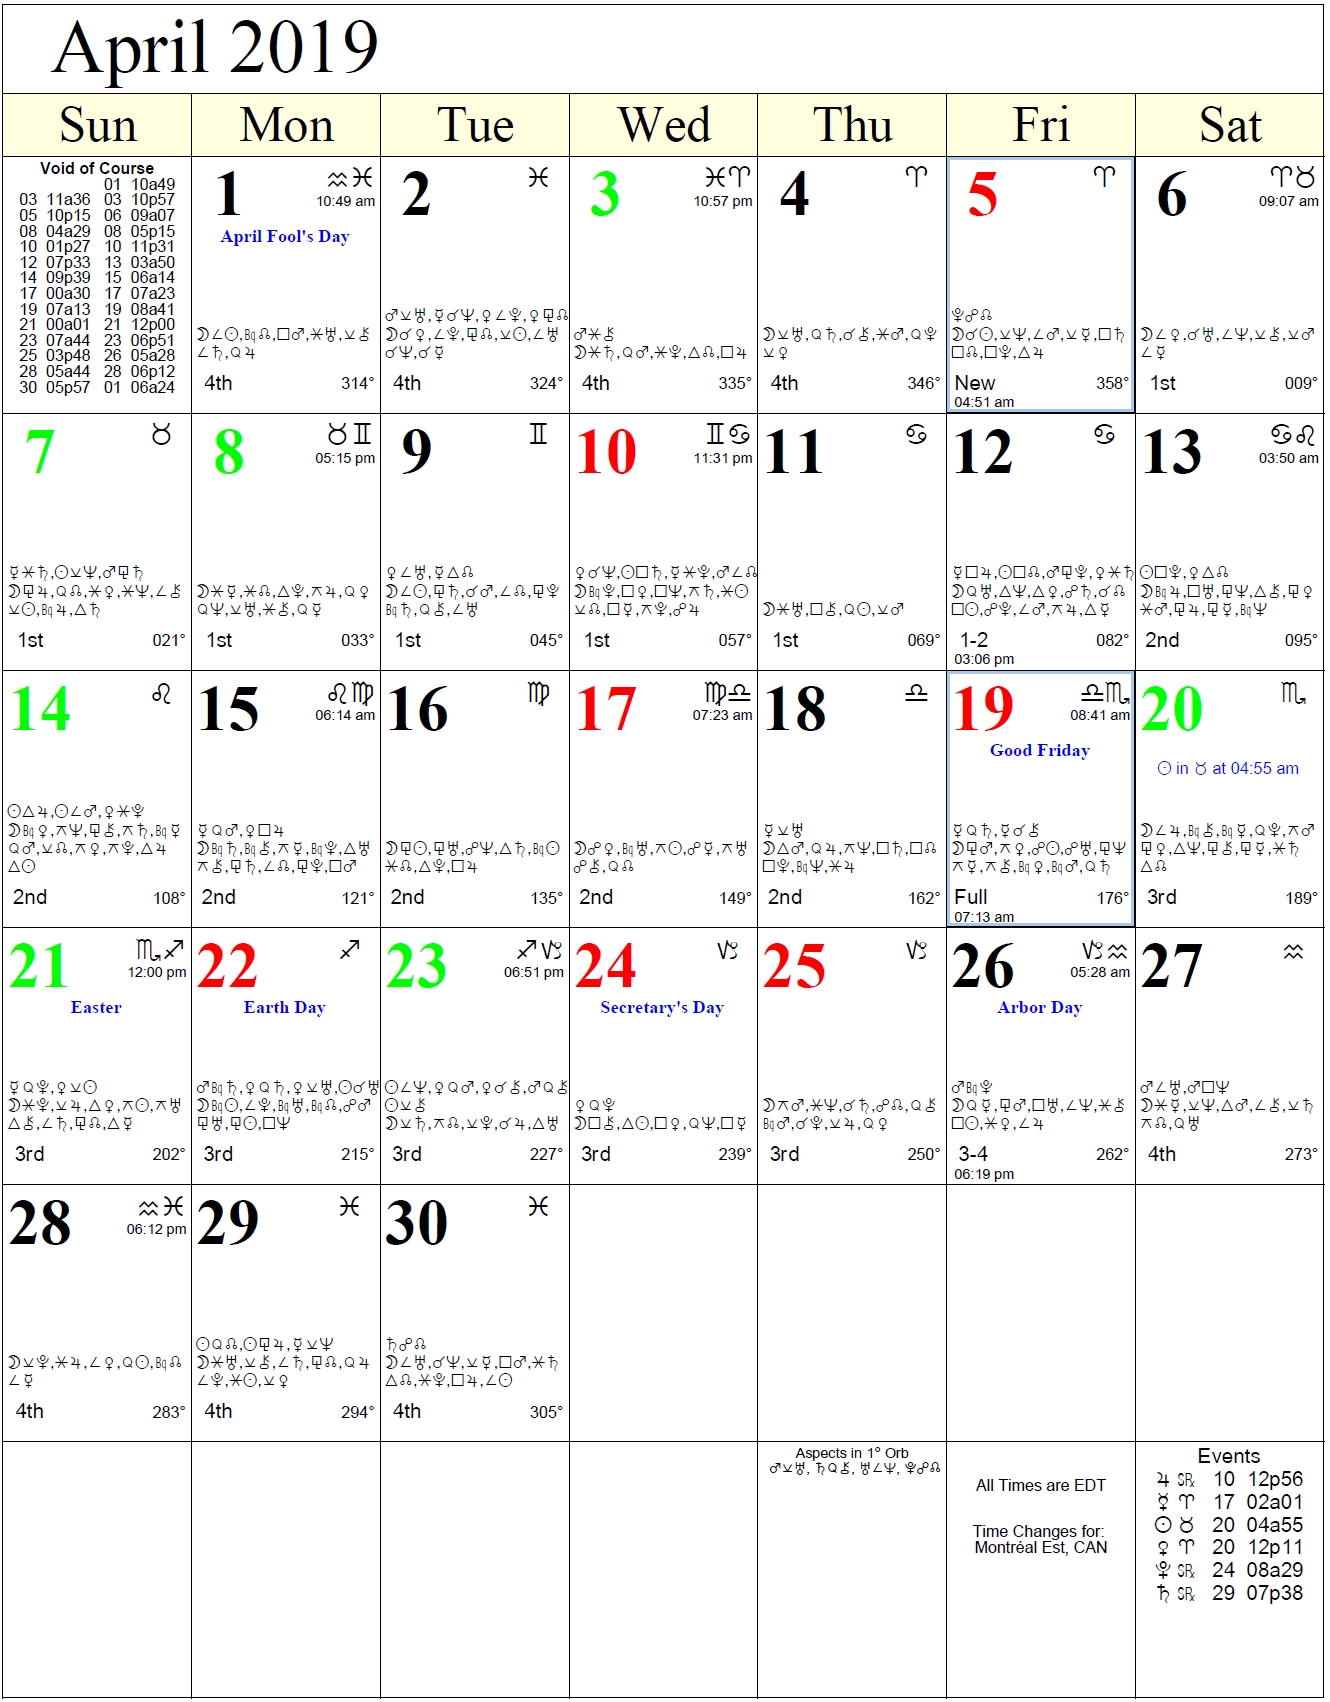 astrological moon calendar